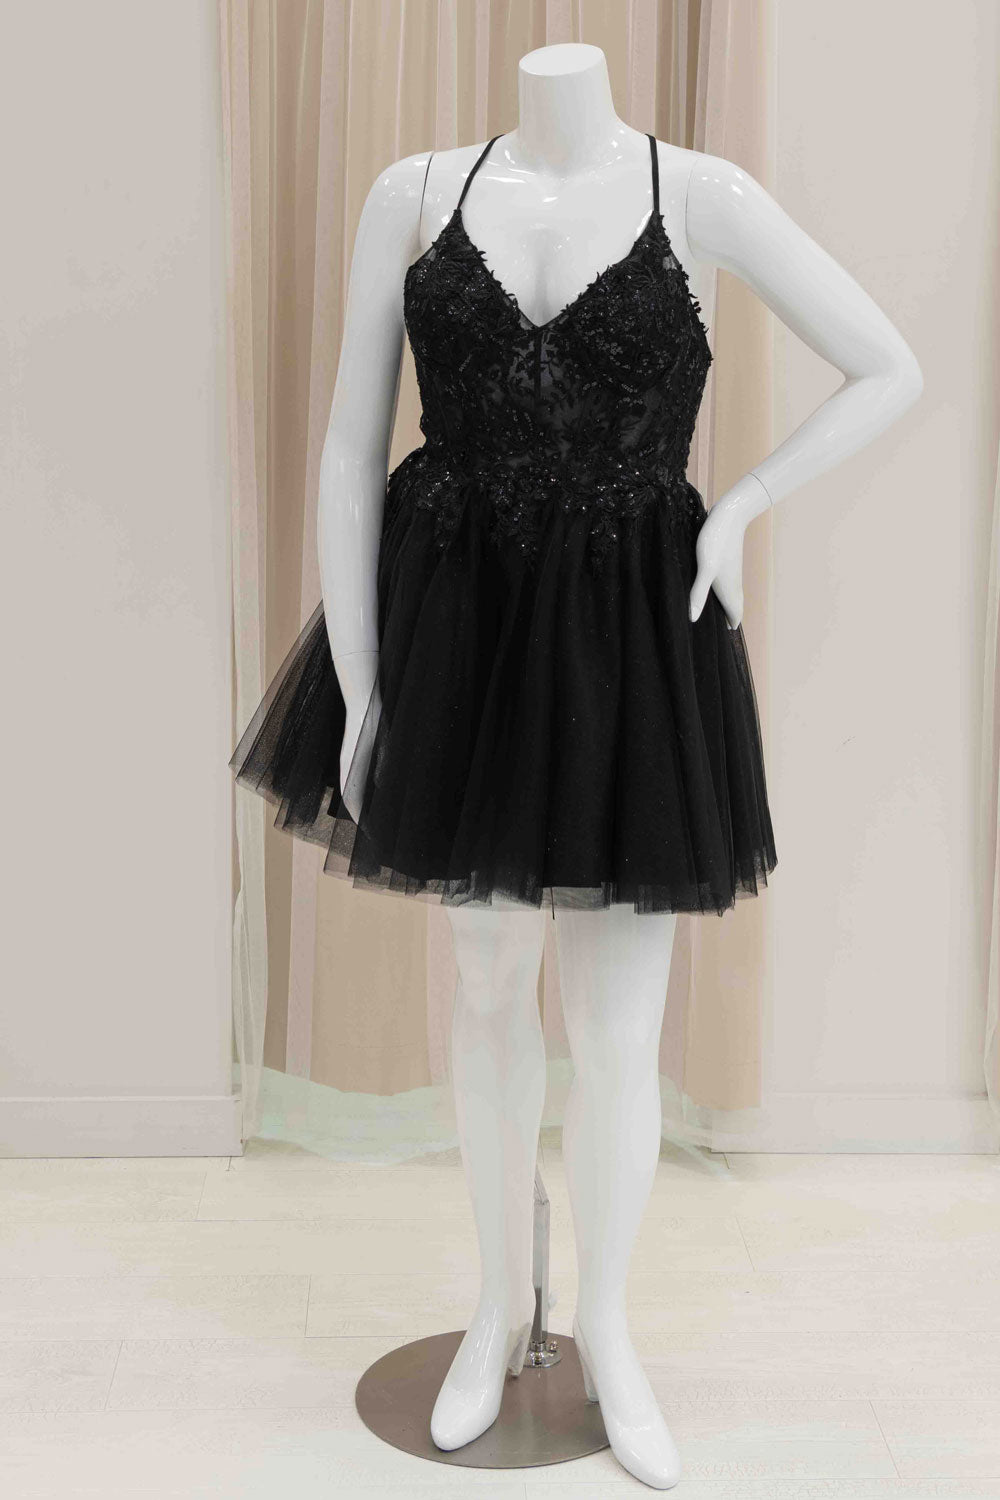 Short Tulle Formal Dress for Sweet 16 in Black 